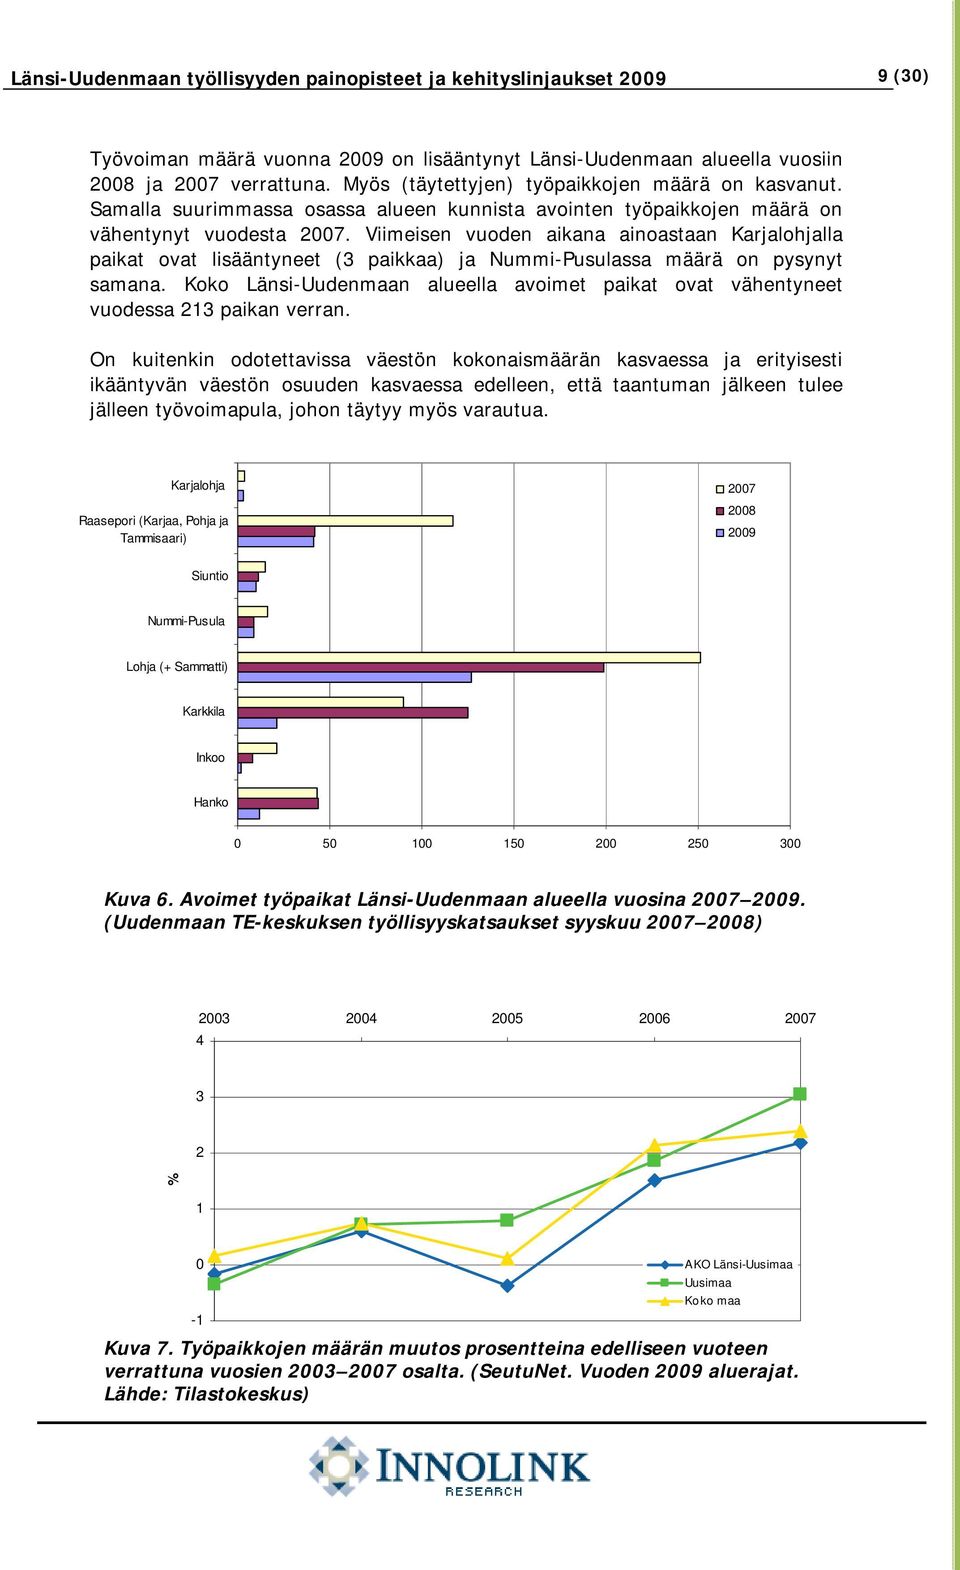 Viimeisen vuoden aikana ainoastaan Karjalohjalla paikat ovat lisääntyneet (3 paikkaa) ja Nummi-Pusulassa määrä on pysynyt samana.